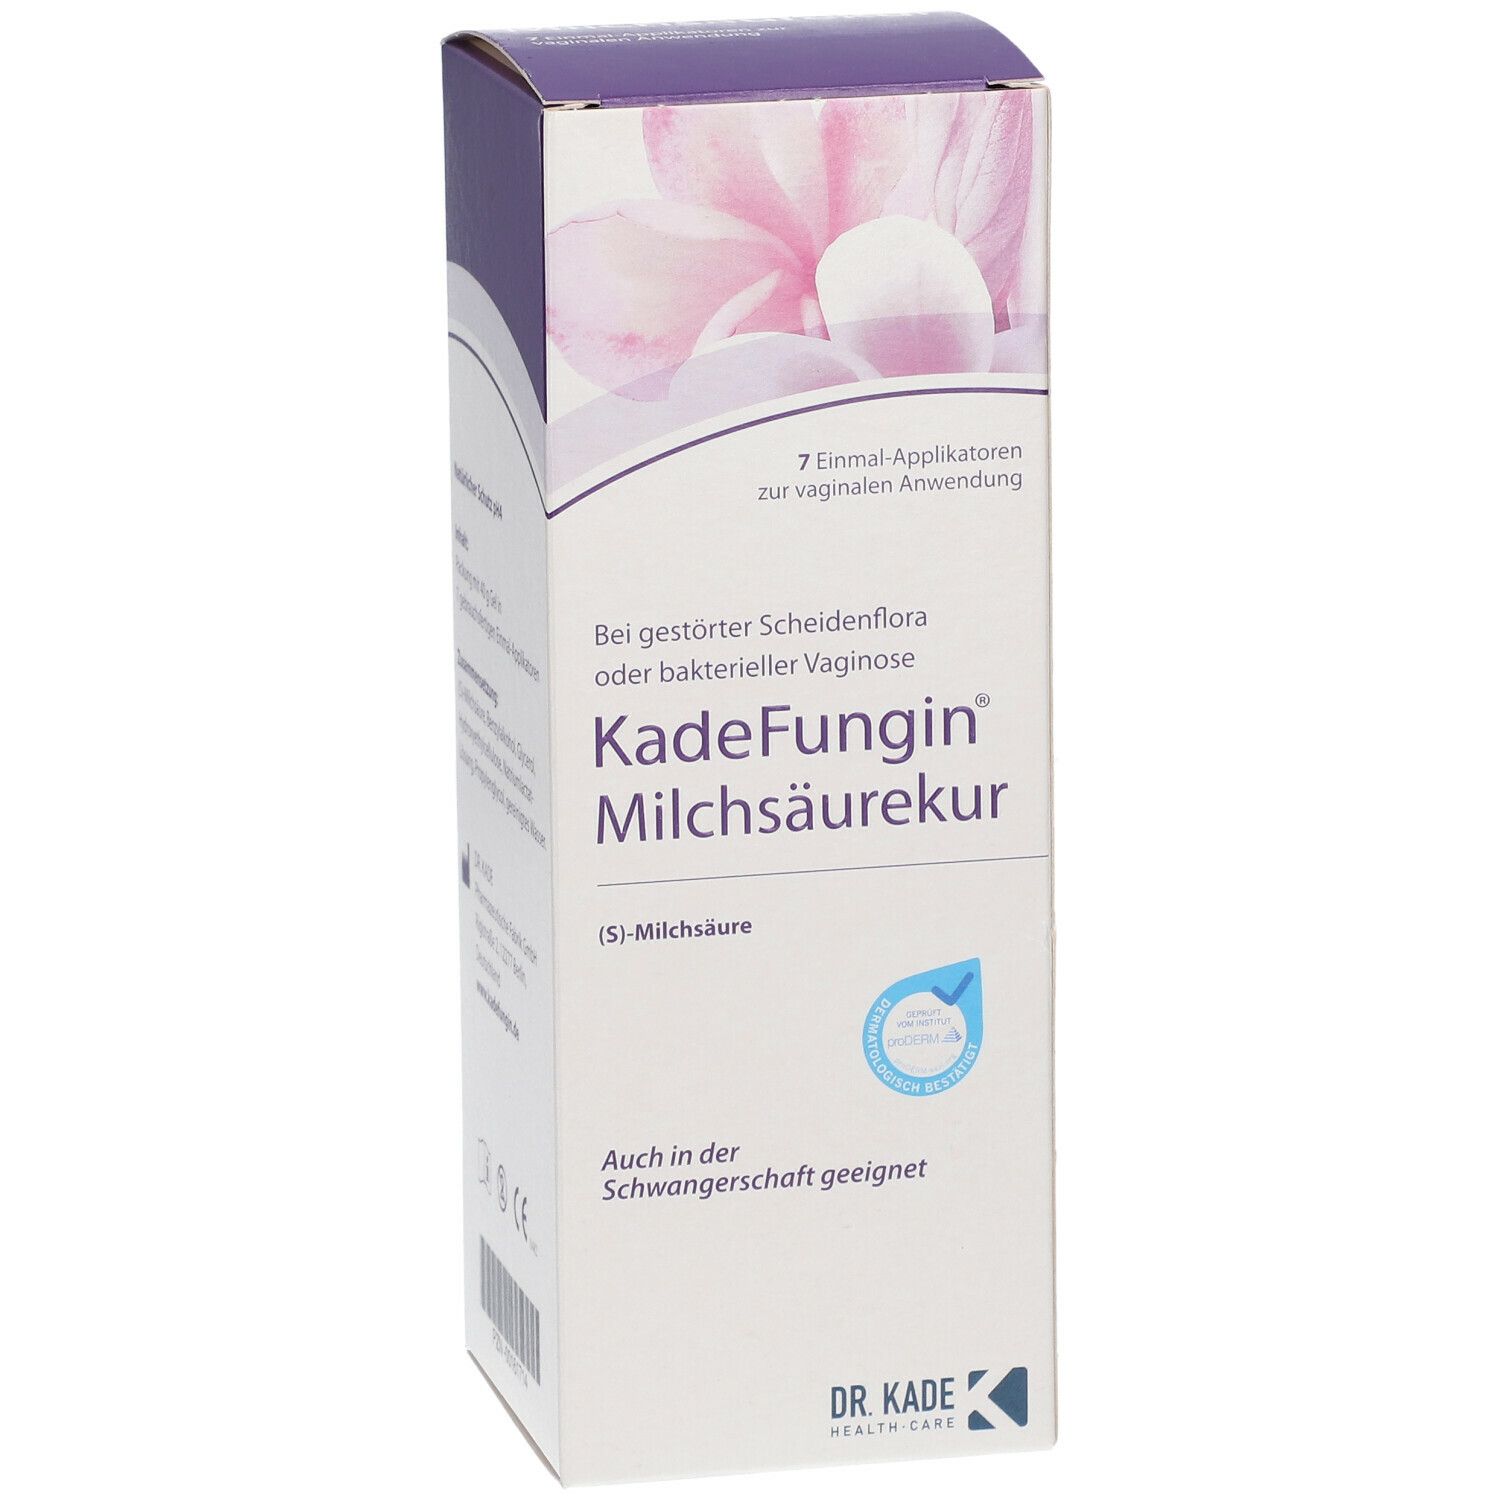 KadeFungin® Milchsäurekur